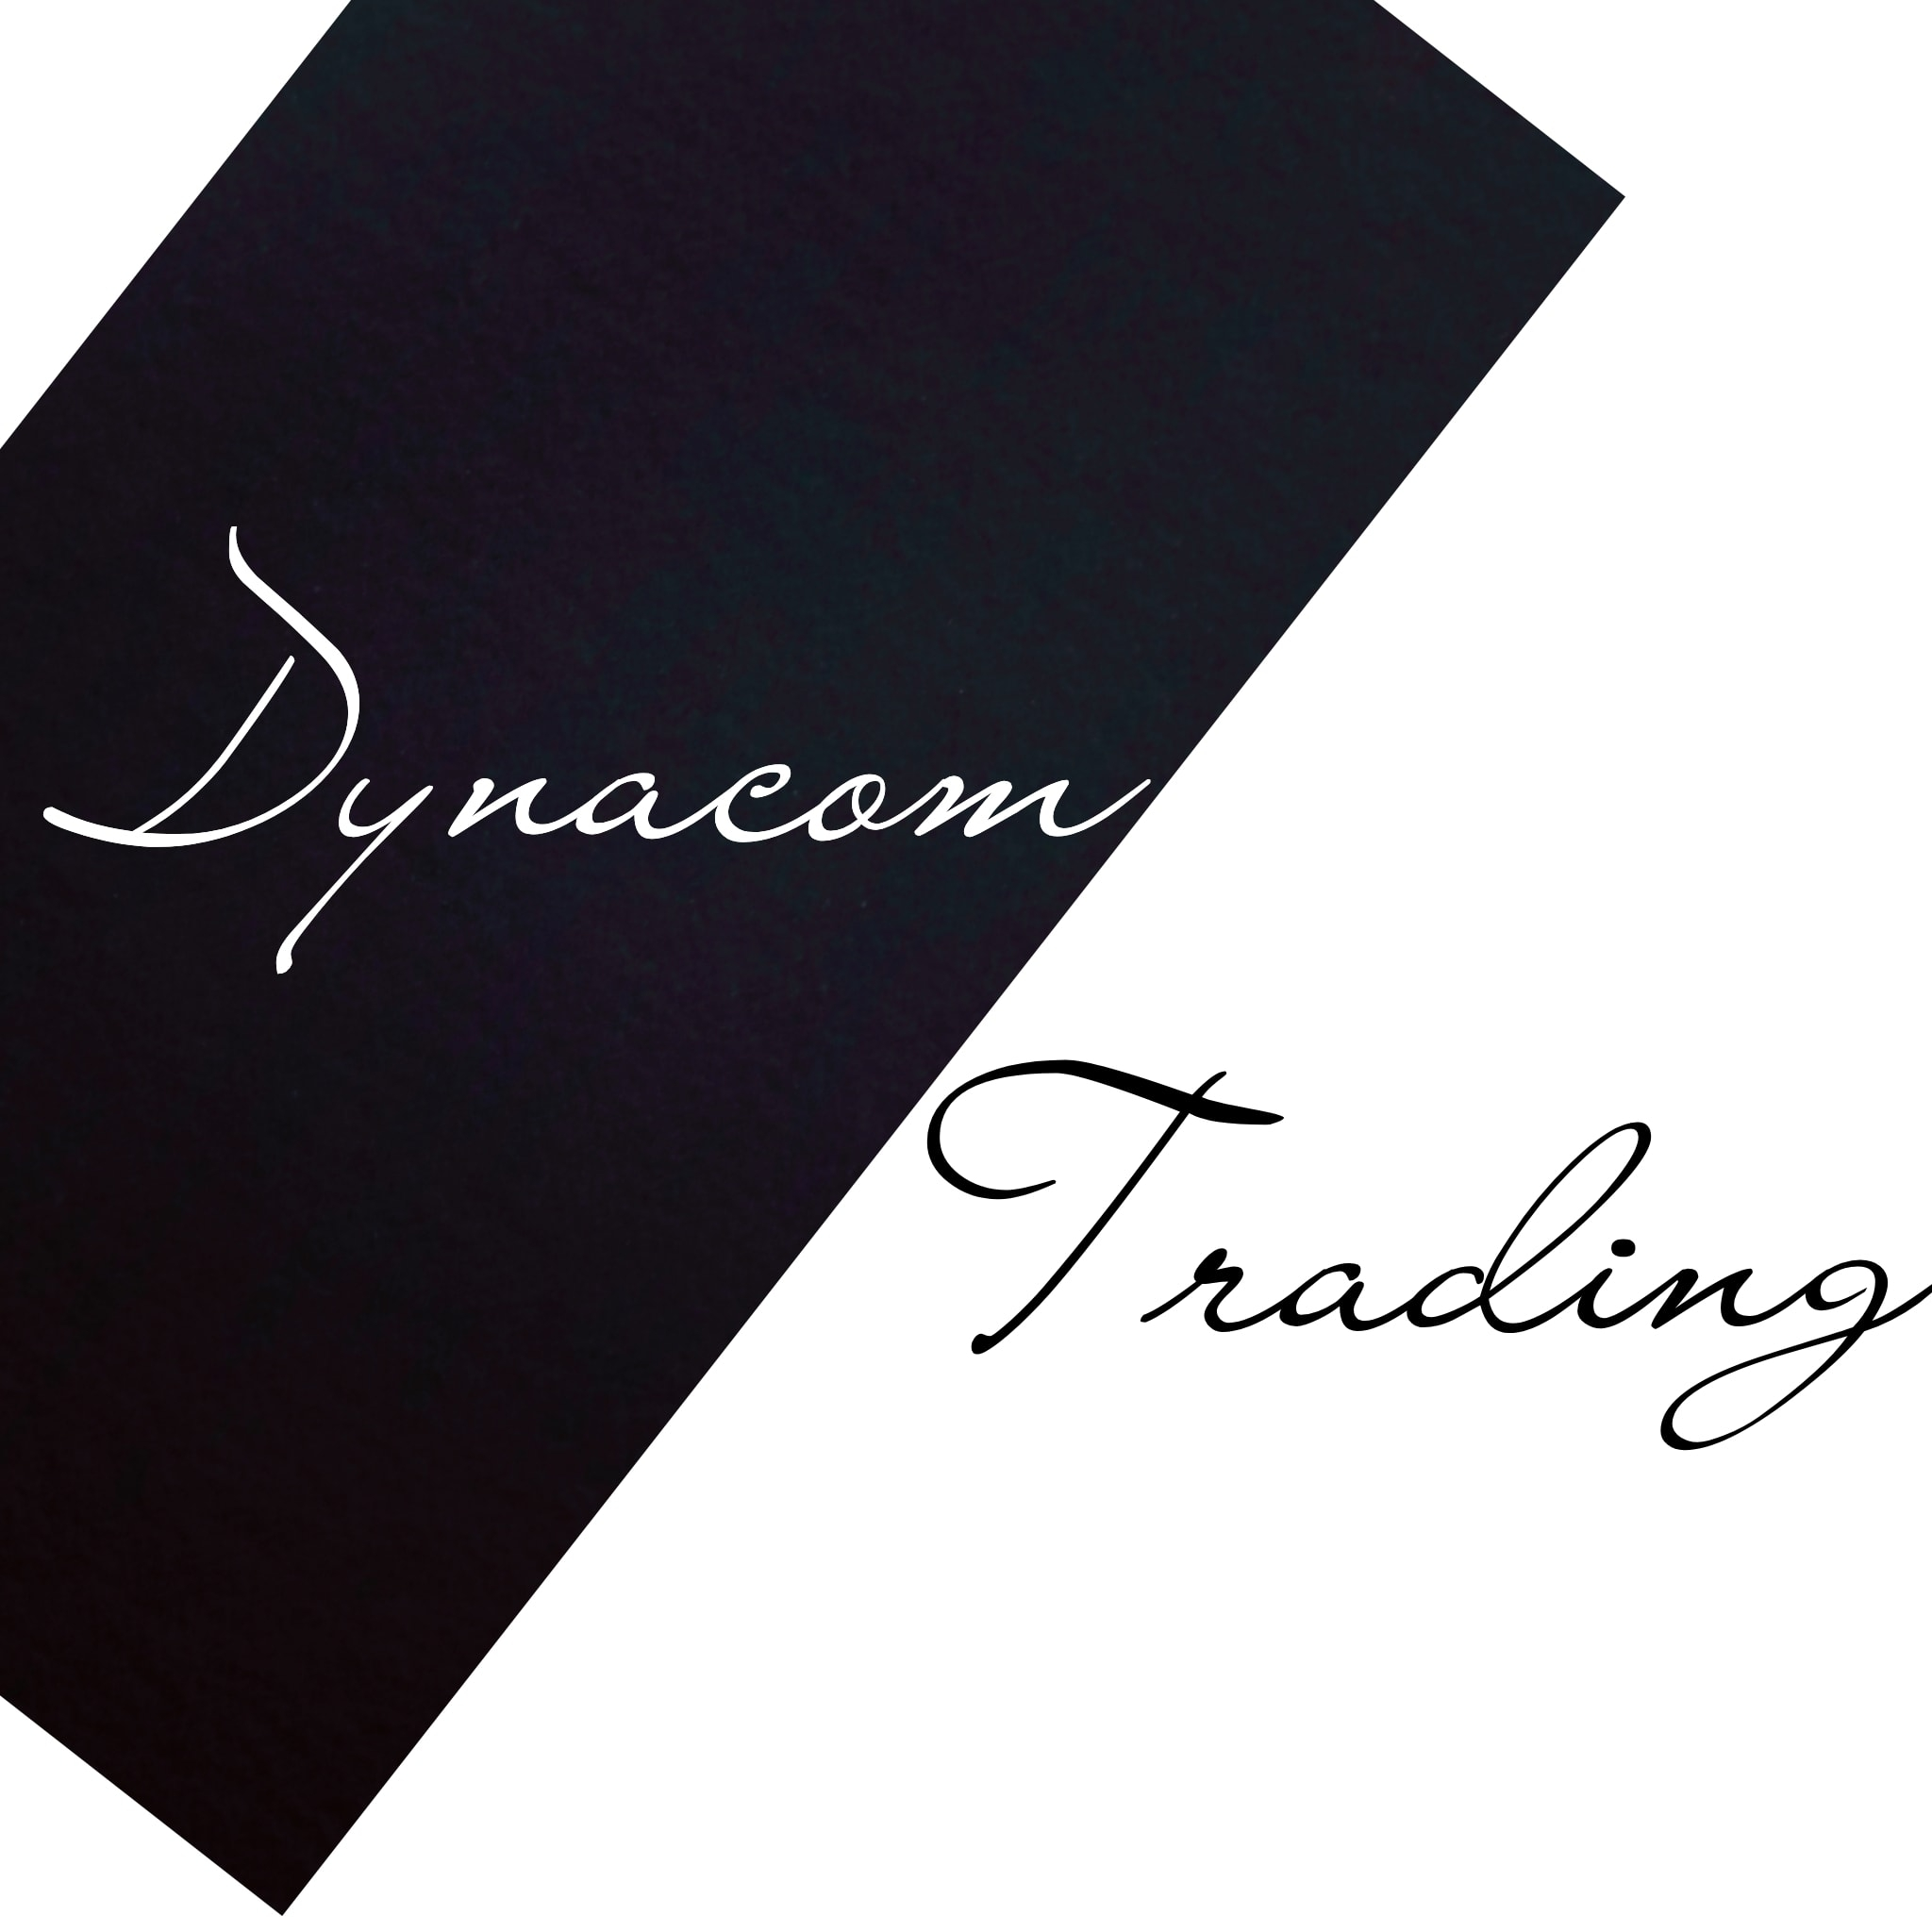 Dynacommunications Trading